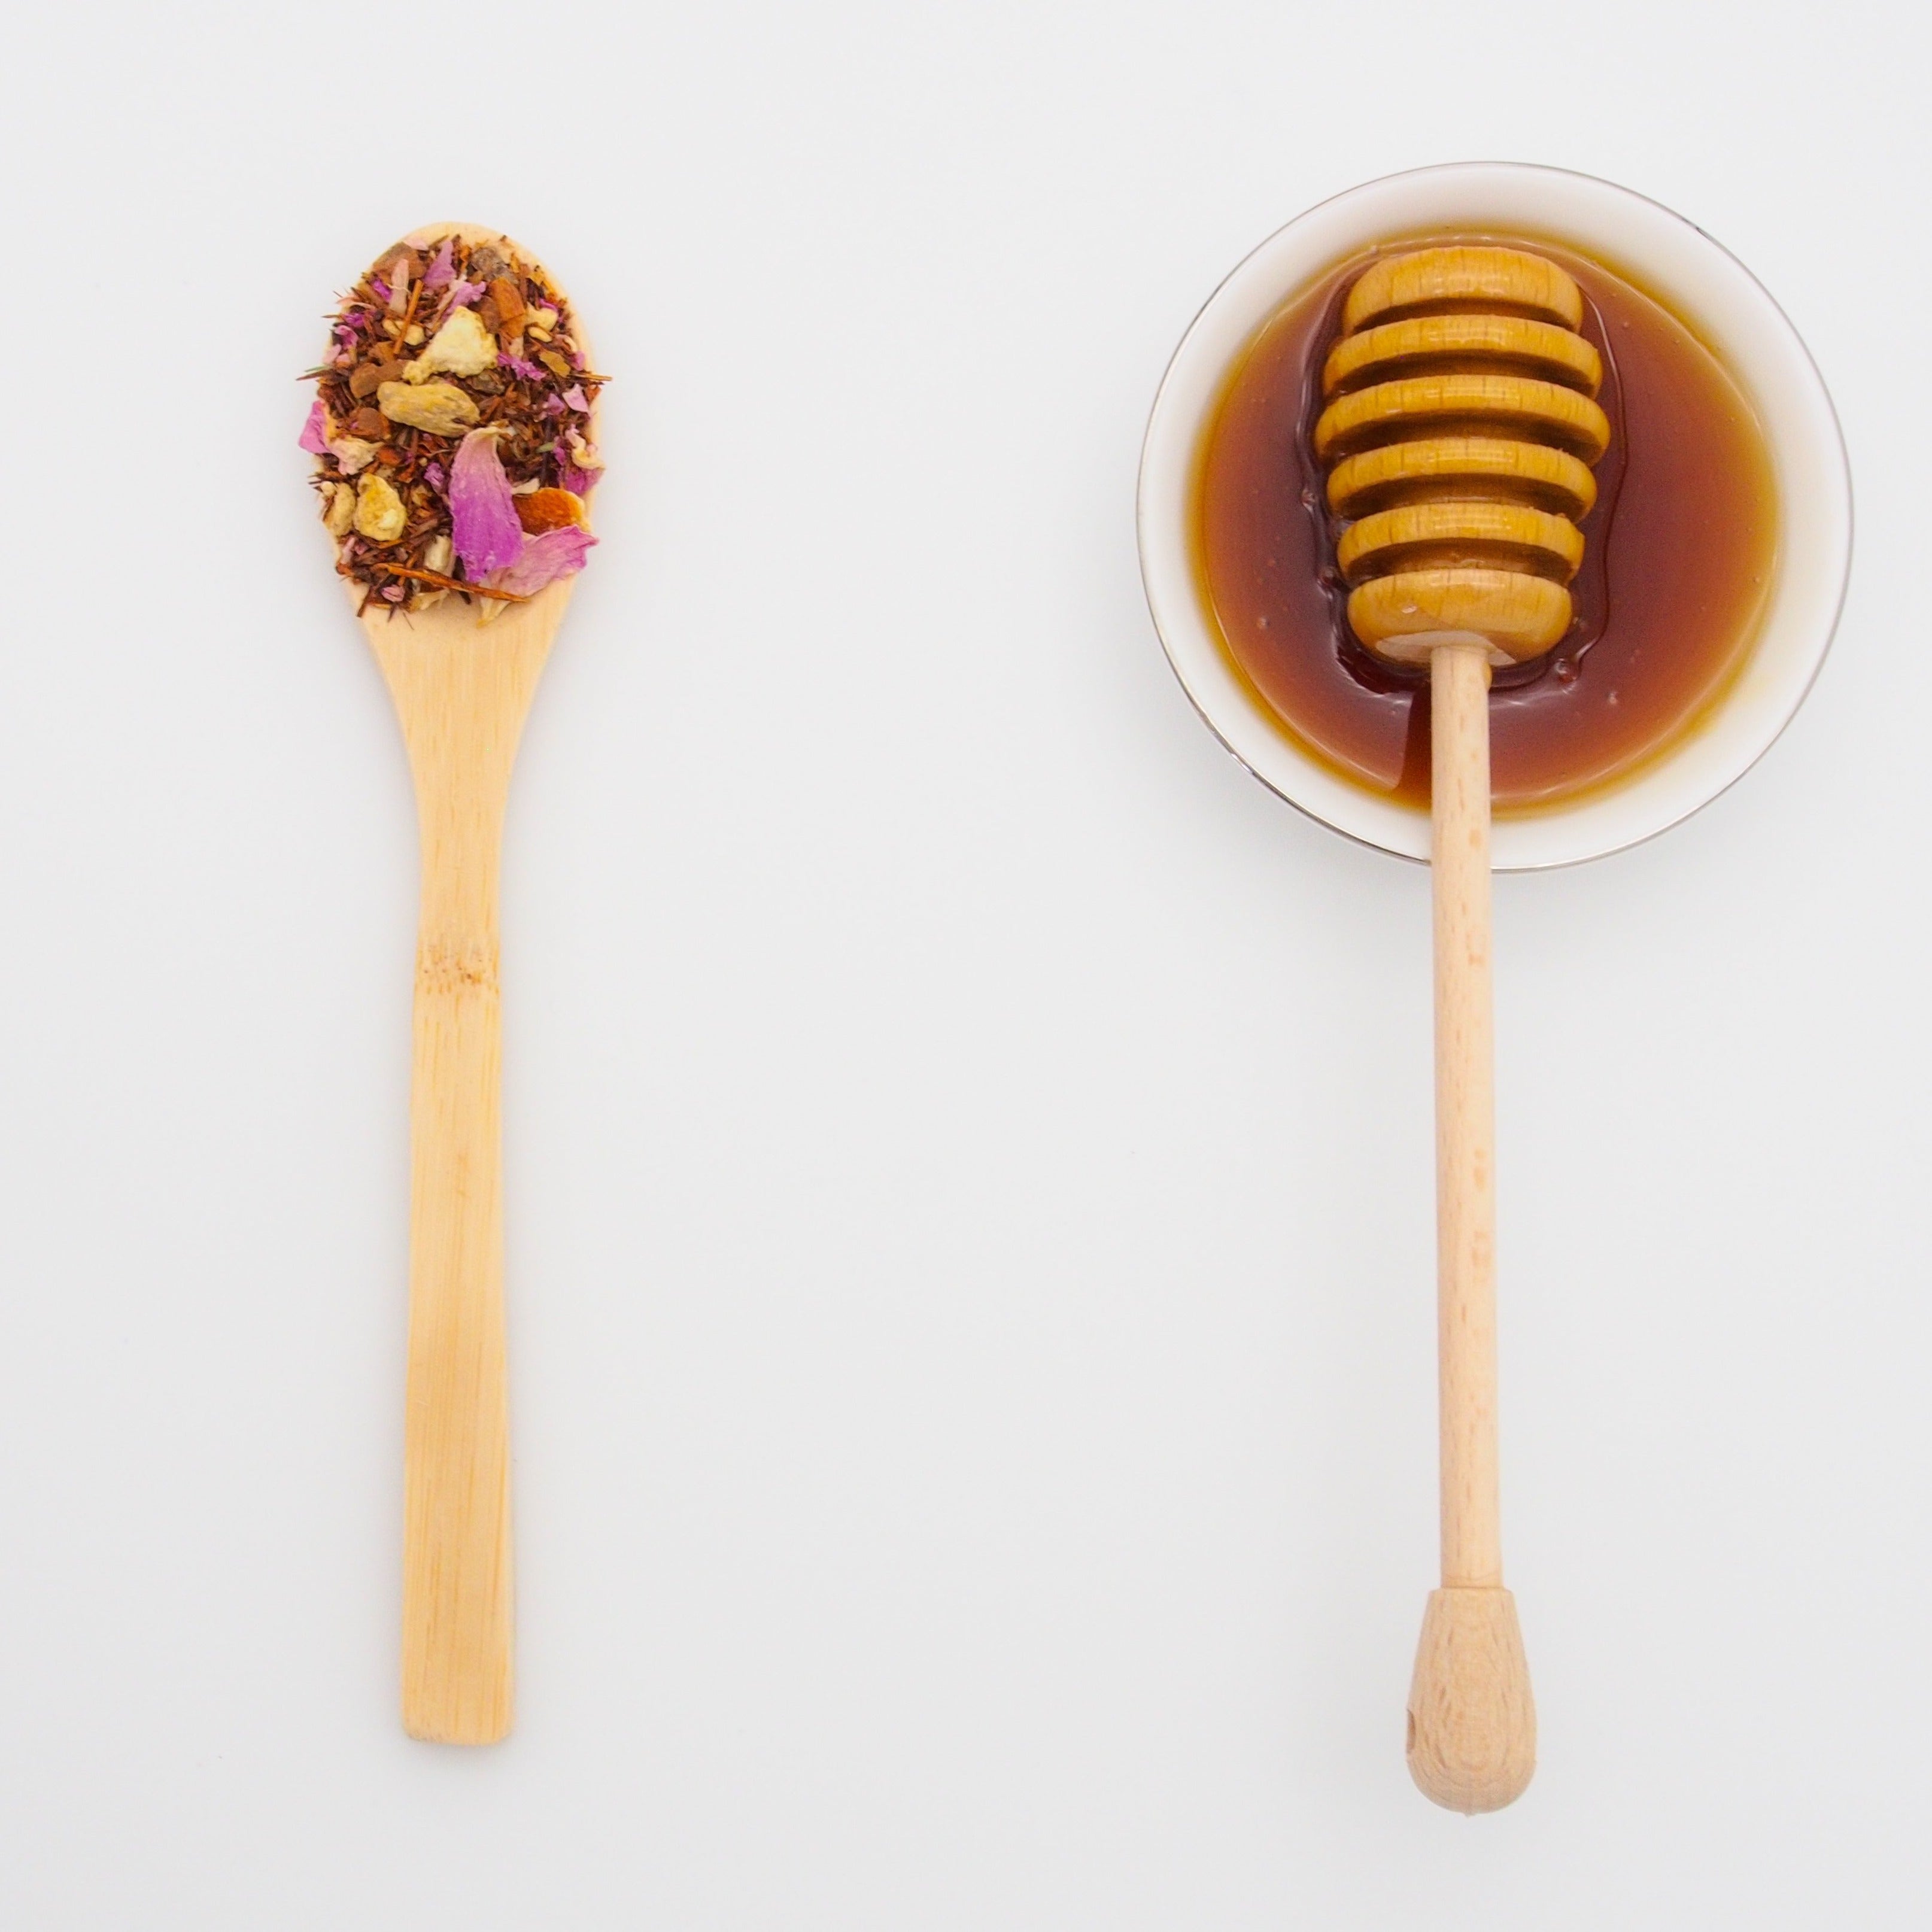 Rose Tulips Honigtau Honig ist bernsteinfarben und hat einen vollmundigen Geschmack bei seidenweicher Textur.